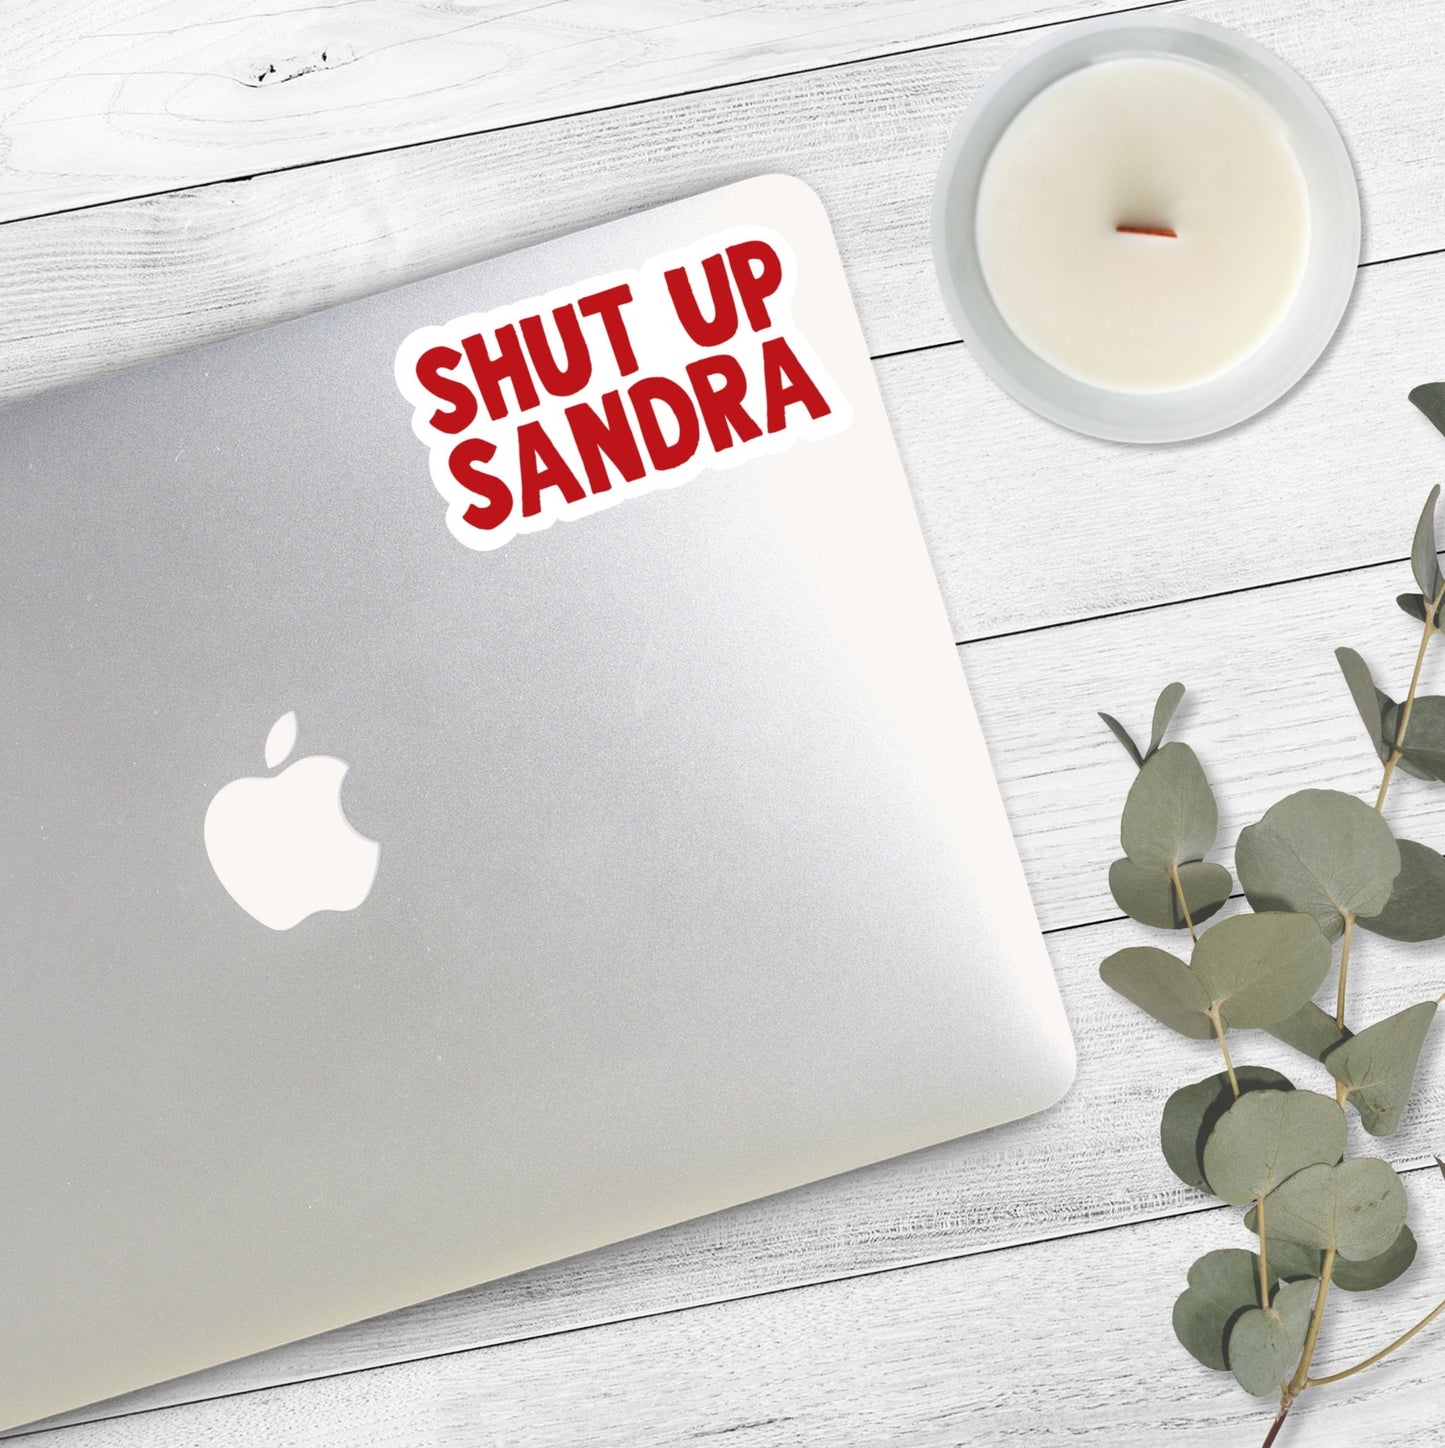 Shut Up Sandra Sticker | Superstore Stickers | Superstore TV Show